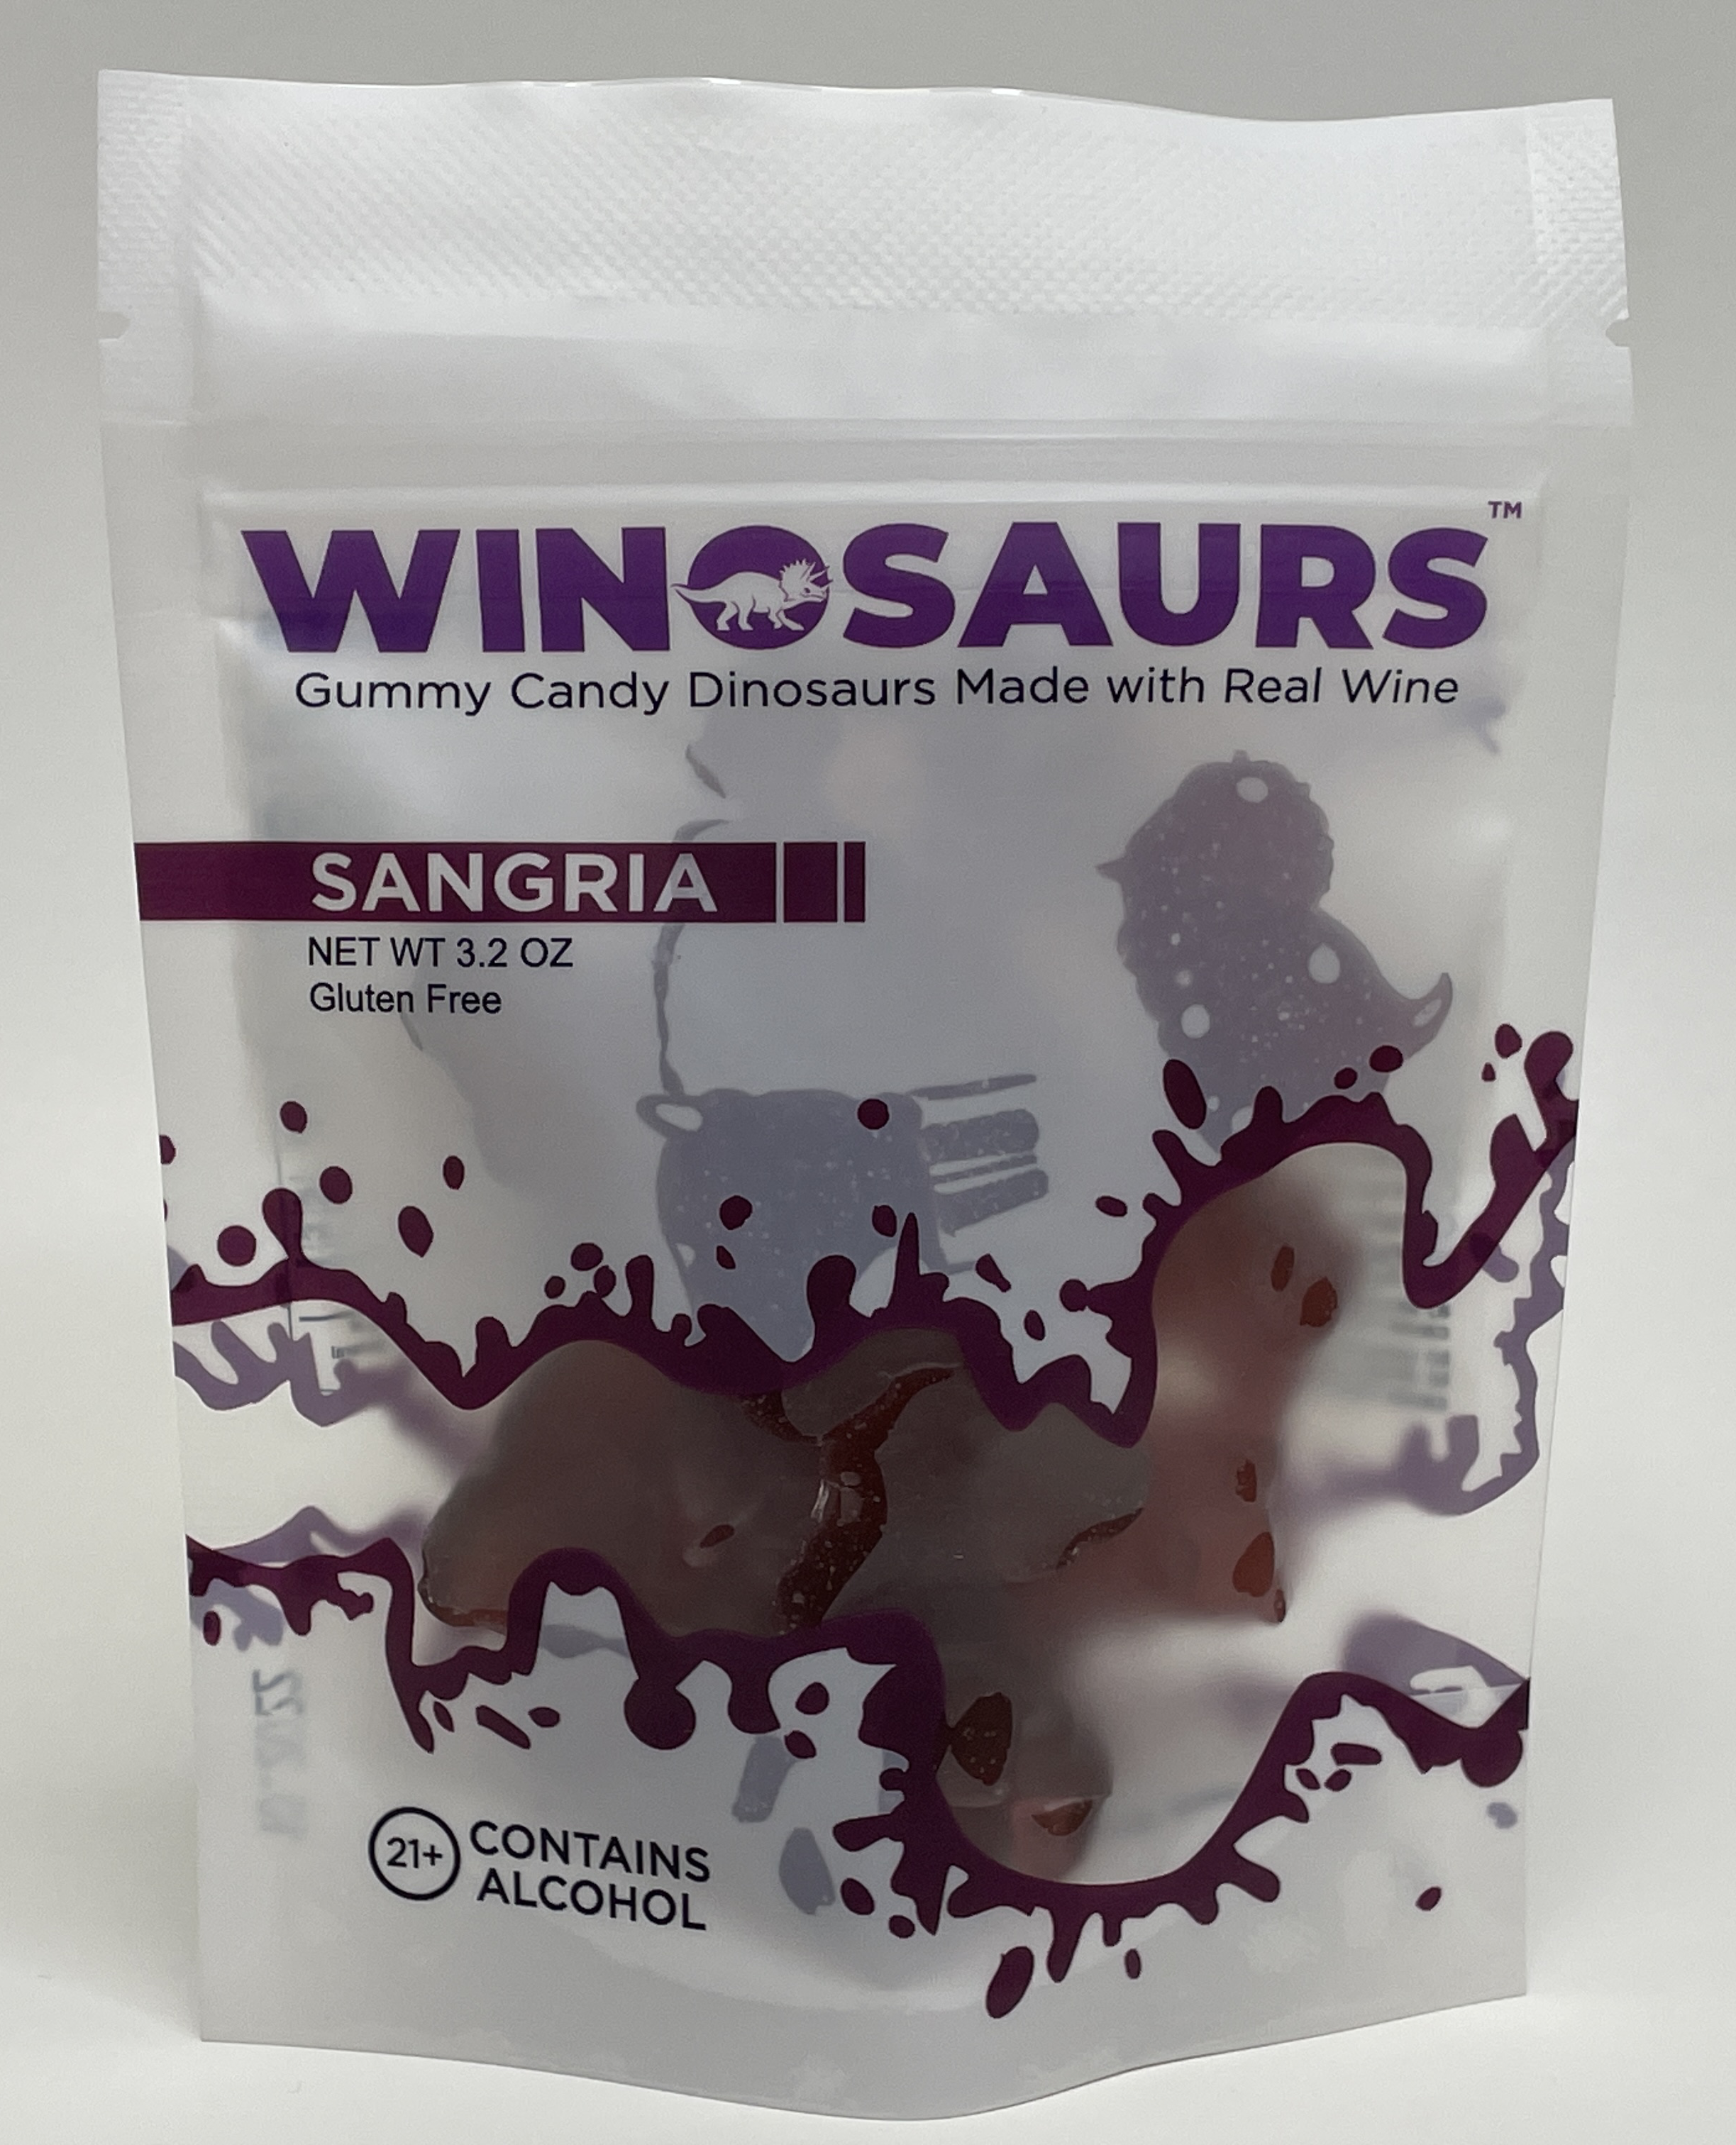 Winosaurs - Fun, unique wine gift!